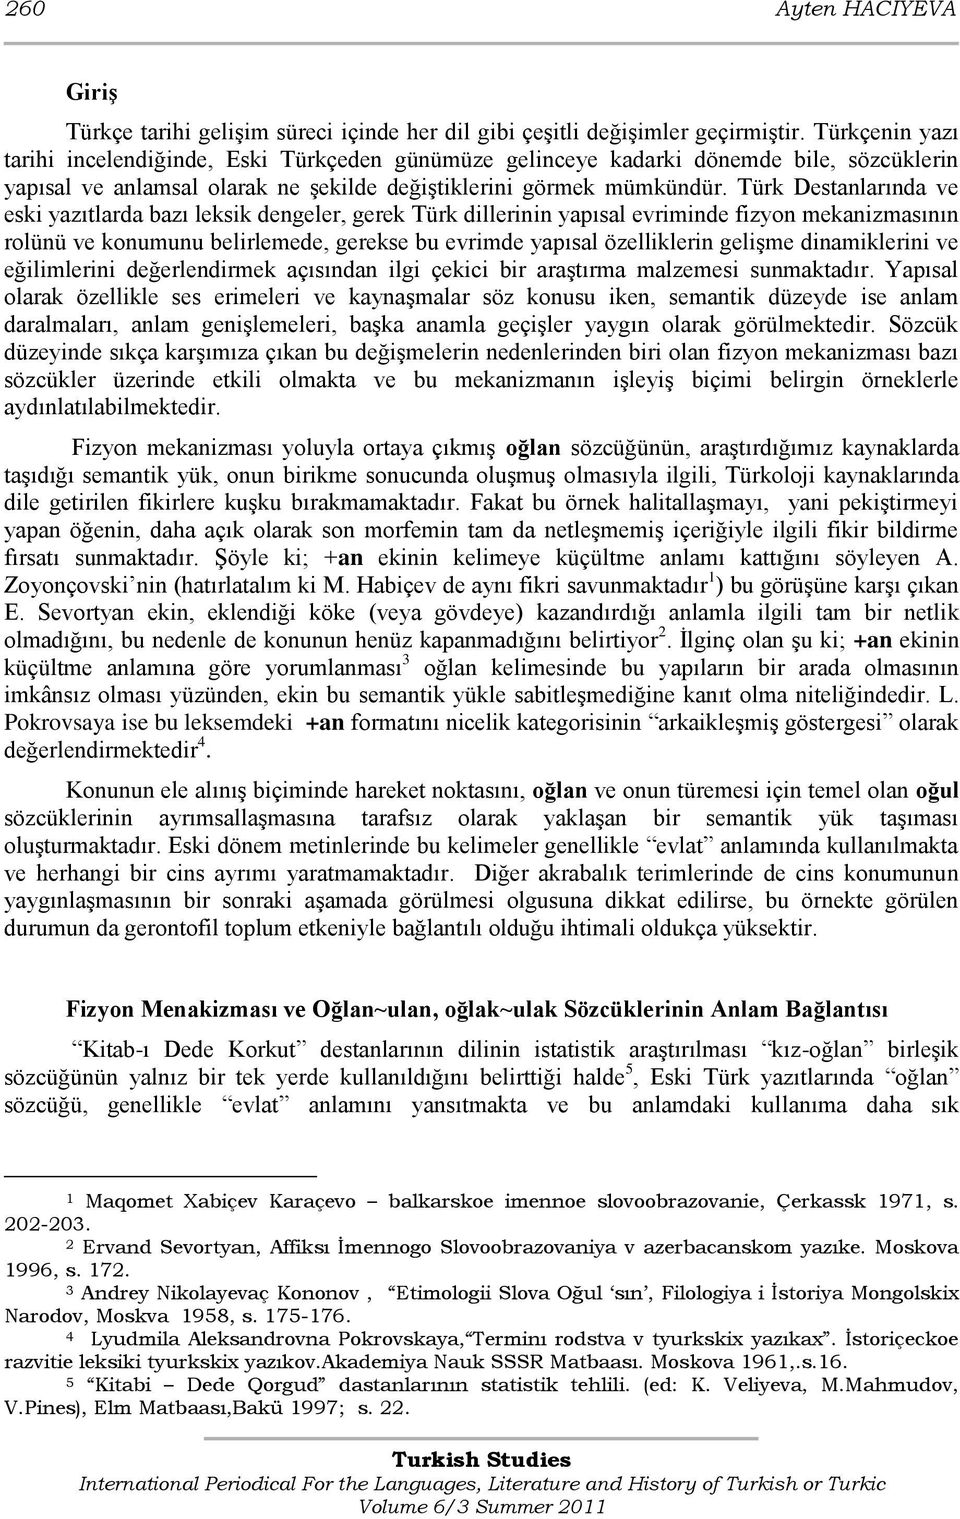 Türk Destanlarında ve eski yazıtlarda bazı leksik dengeler, gerek Türk dillerinin yapısal evriminde fizyon mekanizmasının rolünü ve konumunu belirlemede, gerekse bu evrimde yapısal özelliklerin